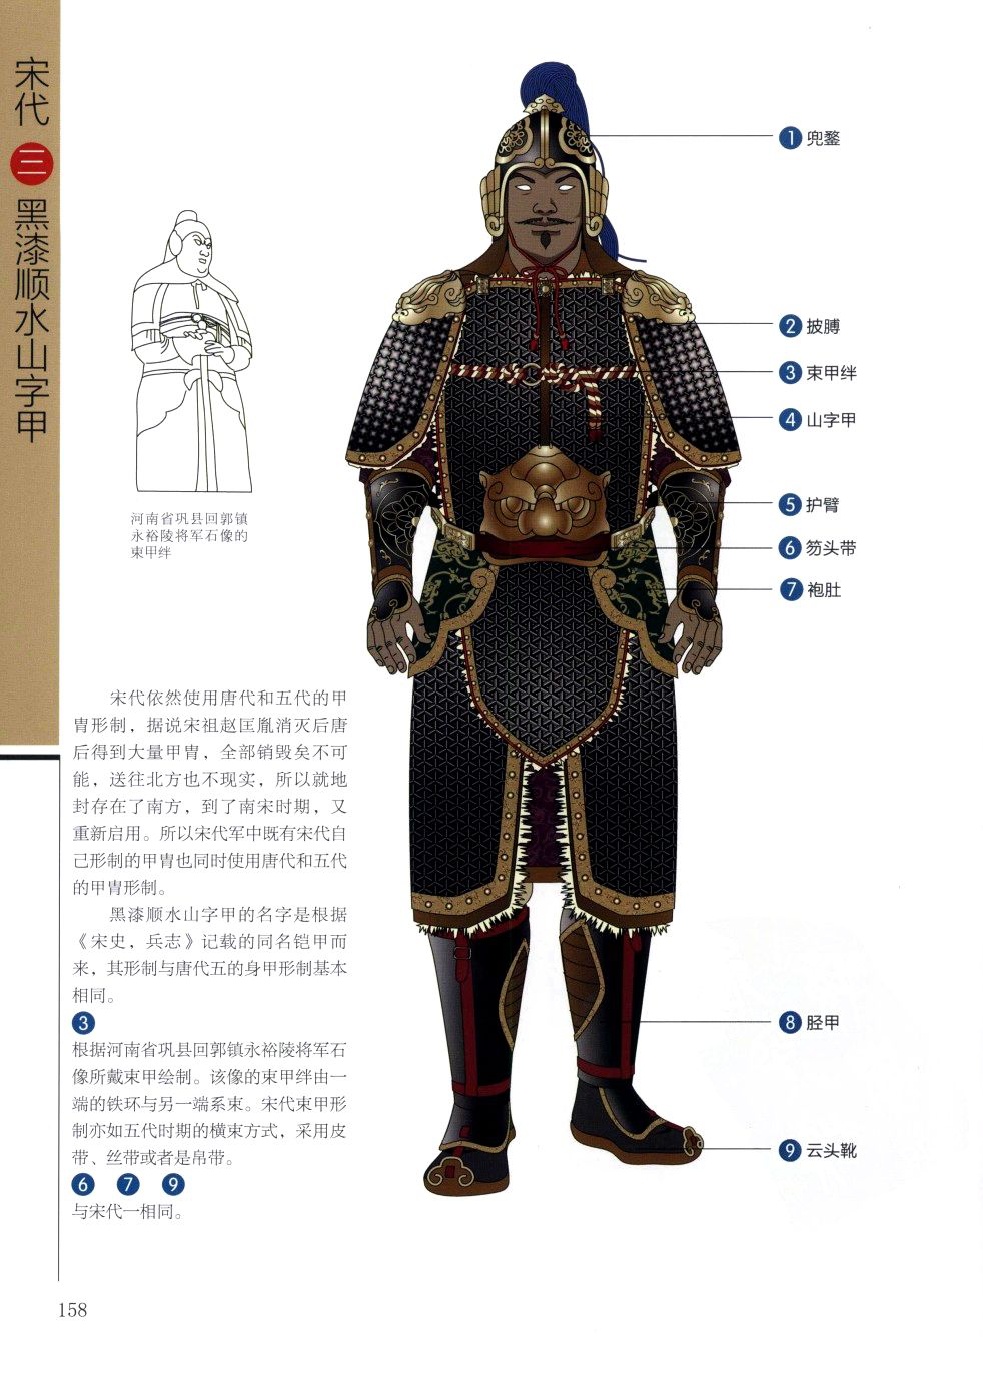 中国盔甲:中国铠甲是由什么构成的？头盔，战裙，还有什么，